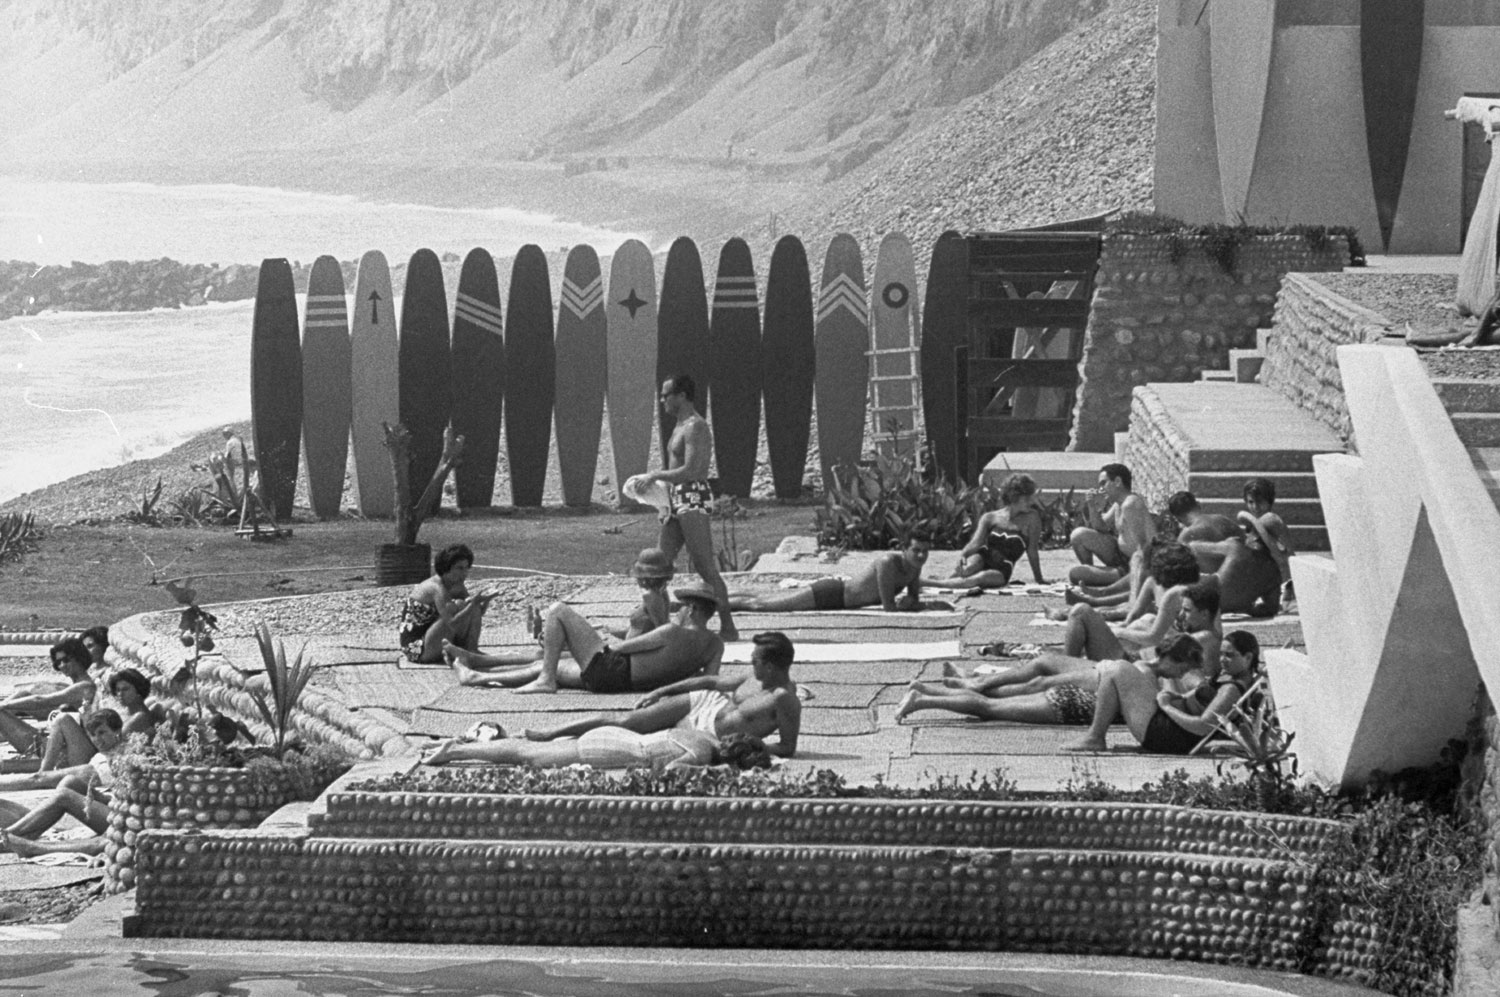 Surfing, Lima, Peru, 1959